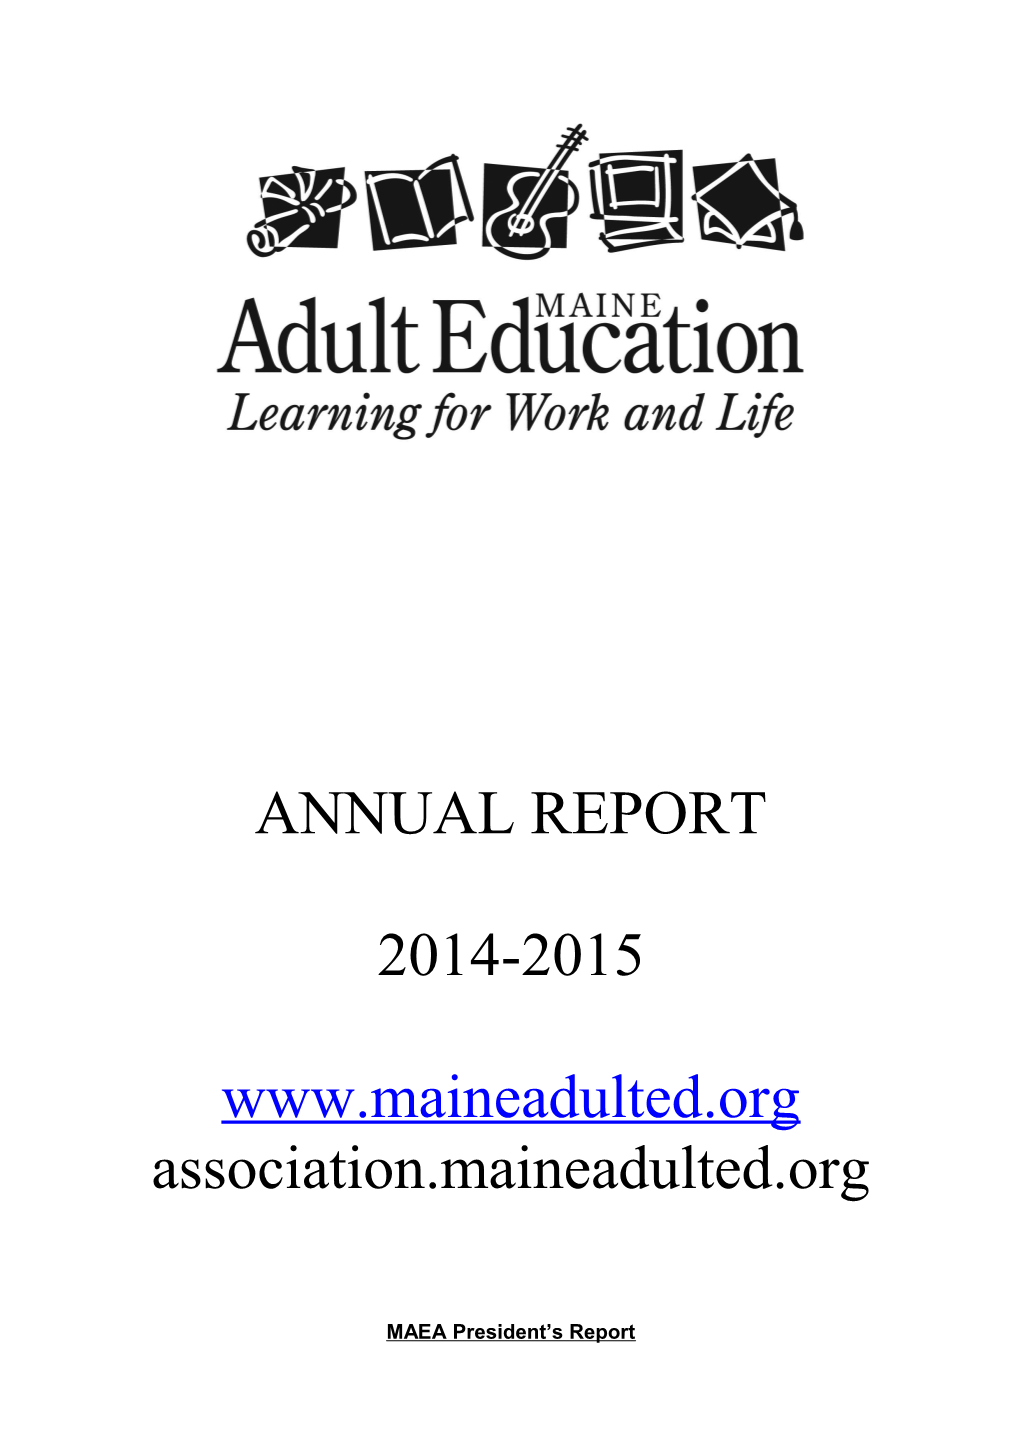 Annual Report s1